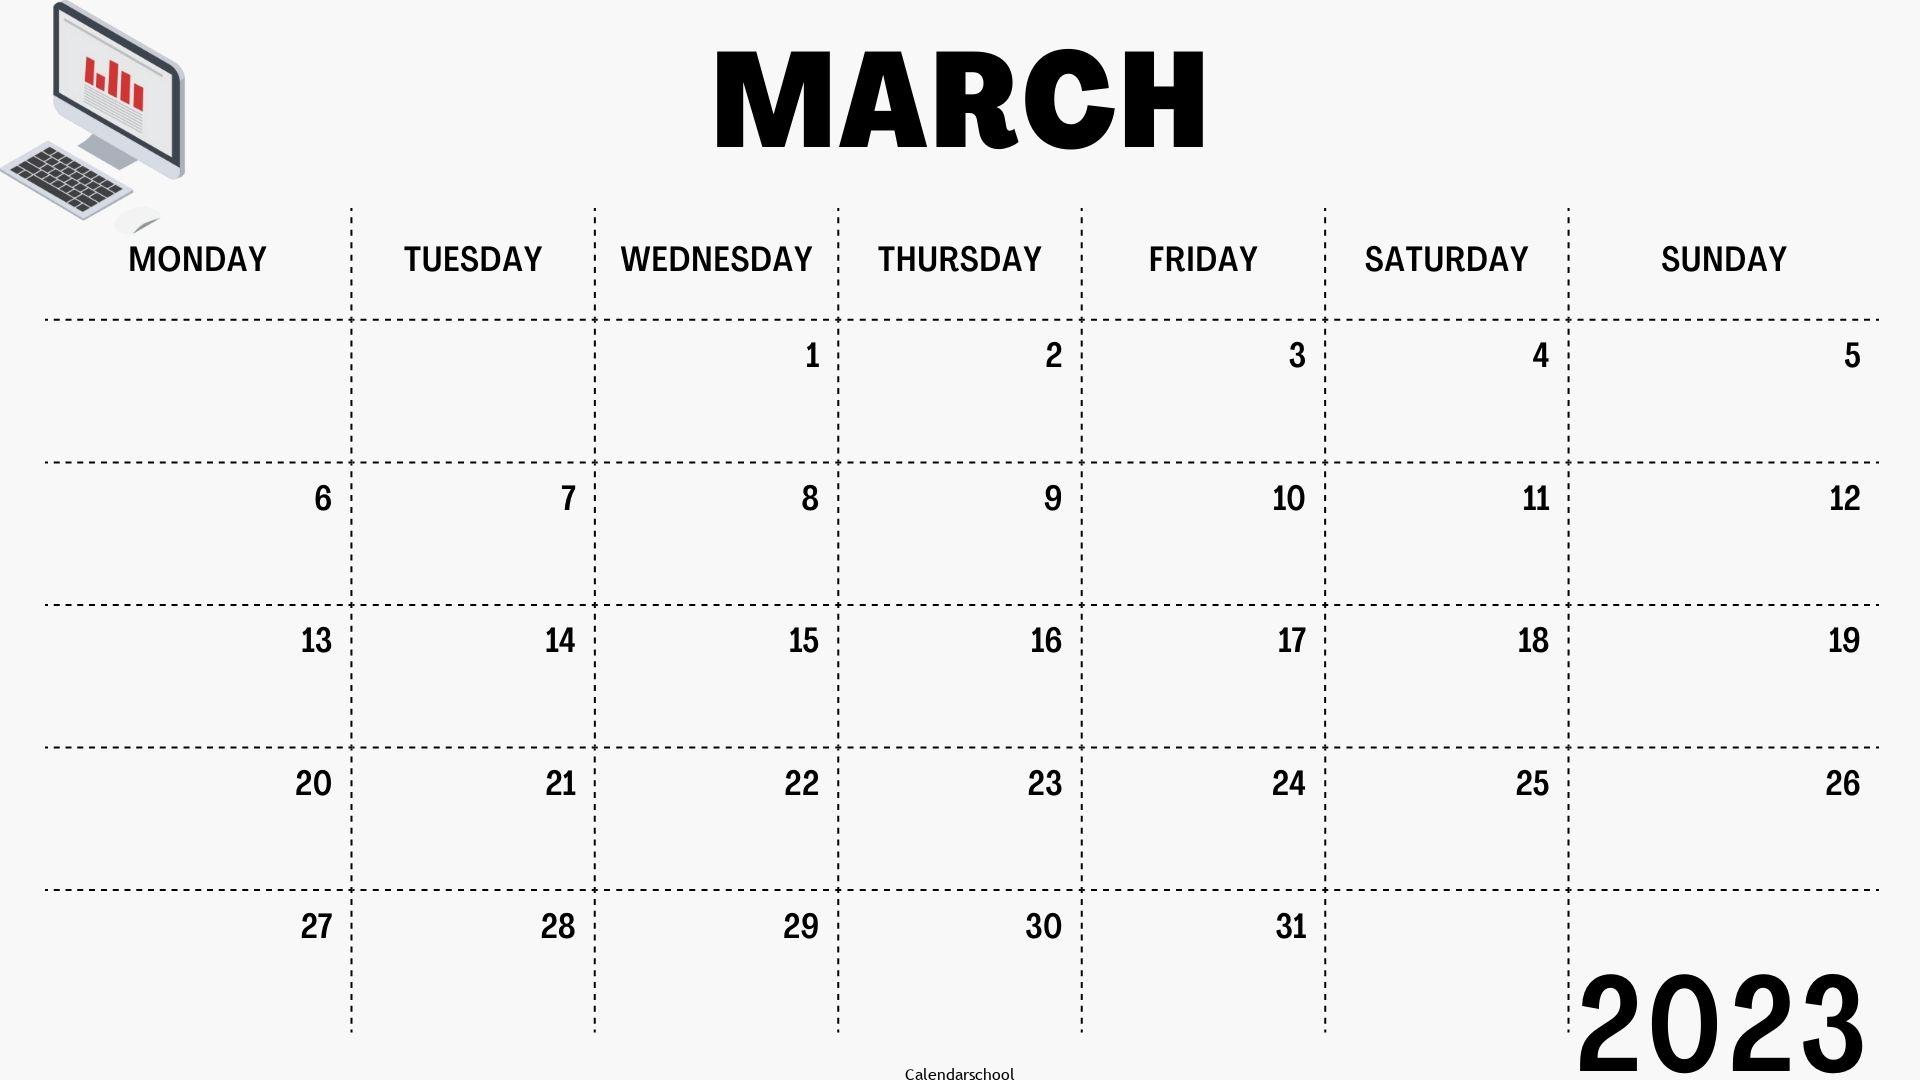 March Calendar 2023 Template